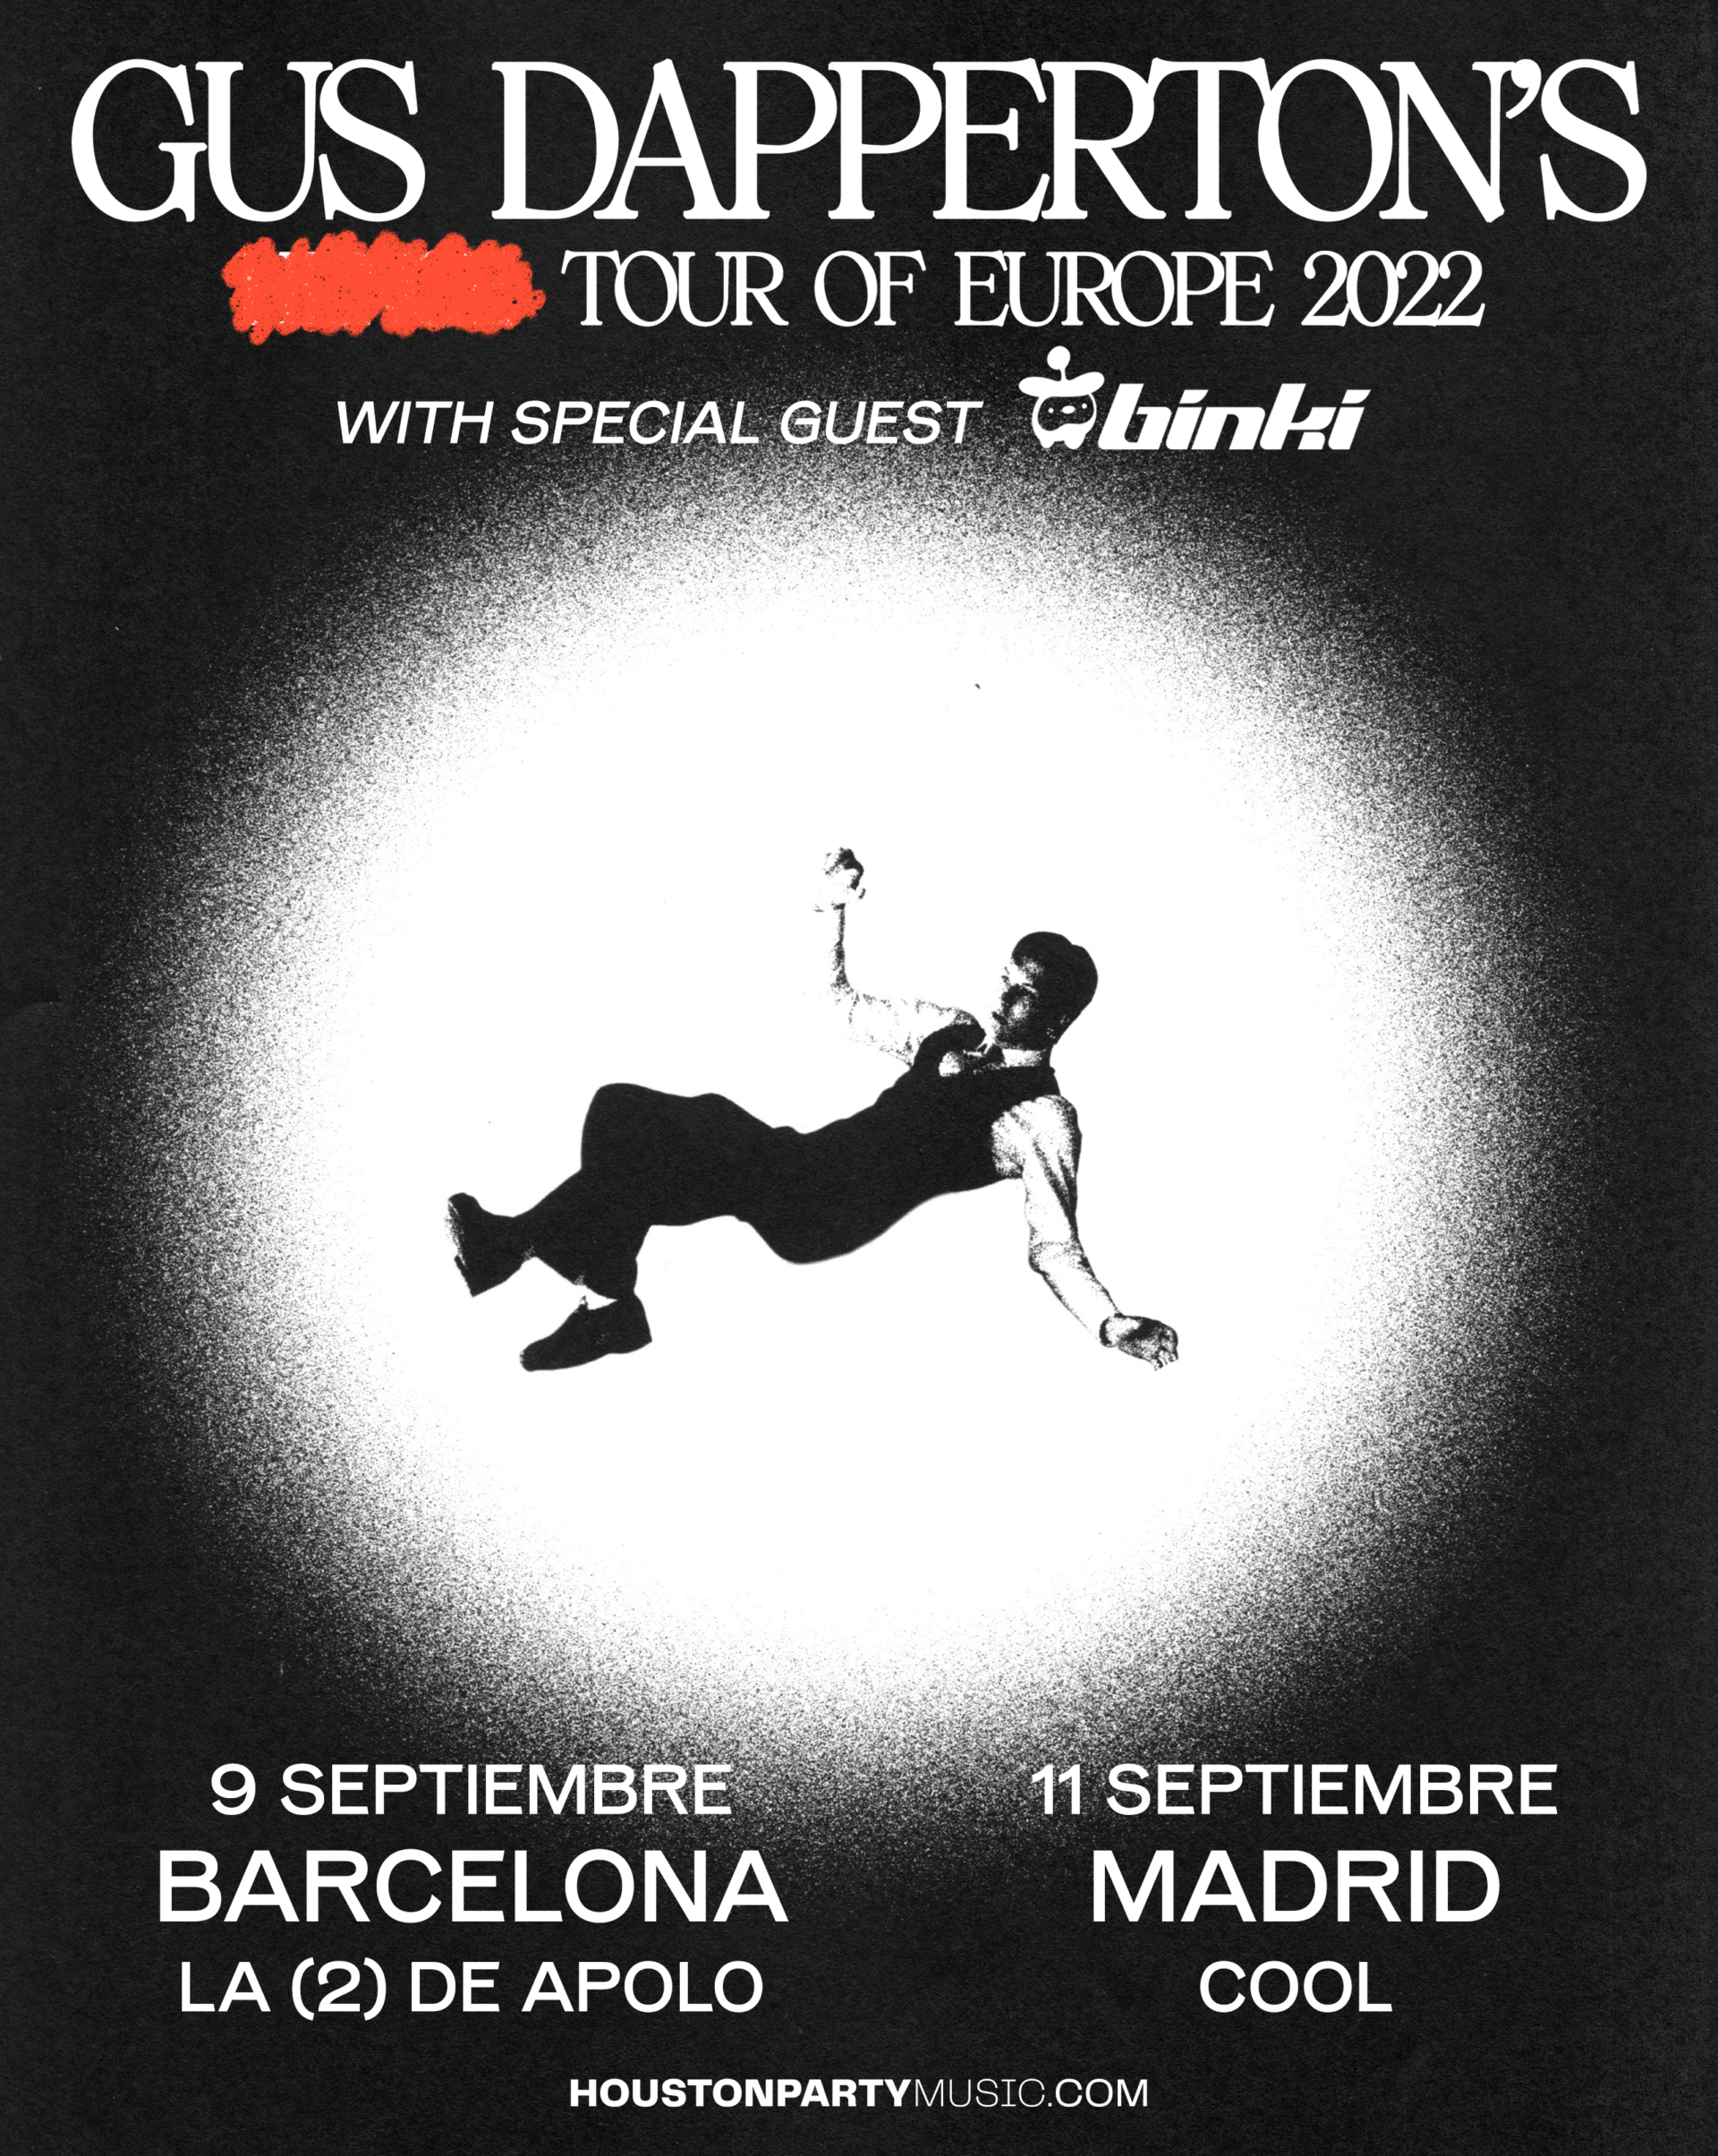 Gus Dapperton ofrecerá dos conciertos en Barcelona y Madrid en septiembre